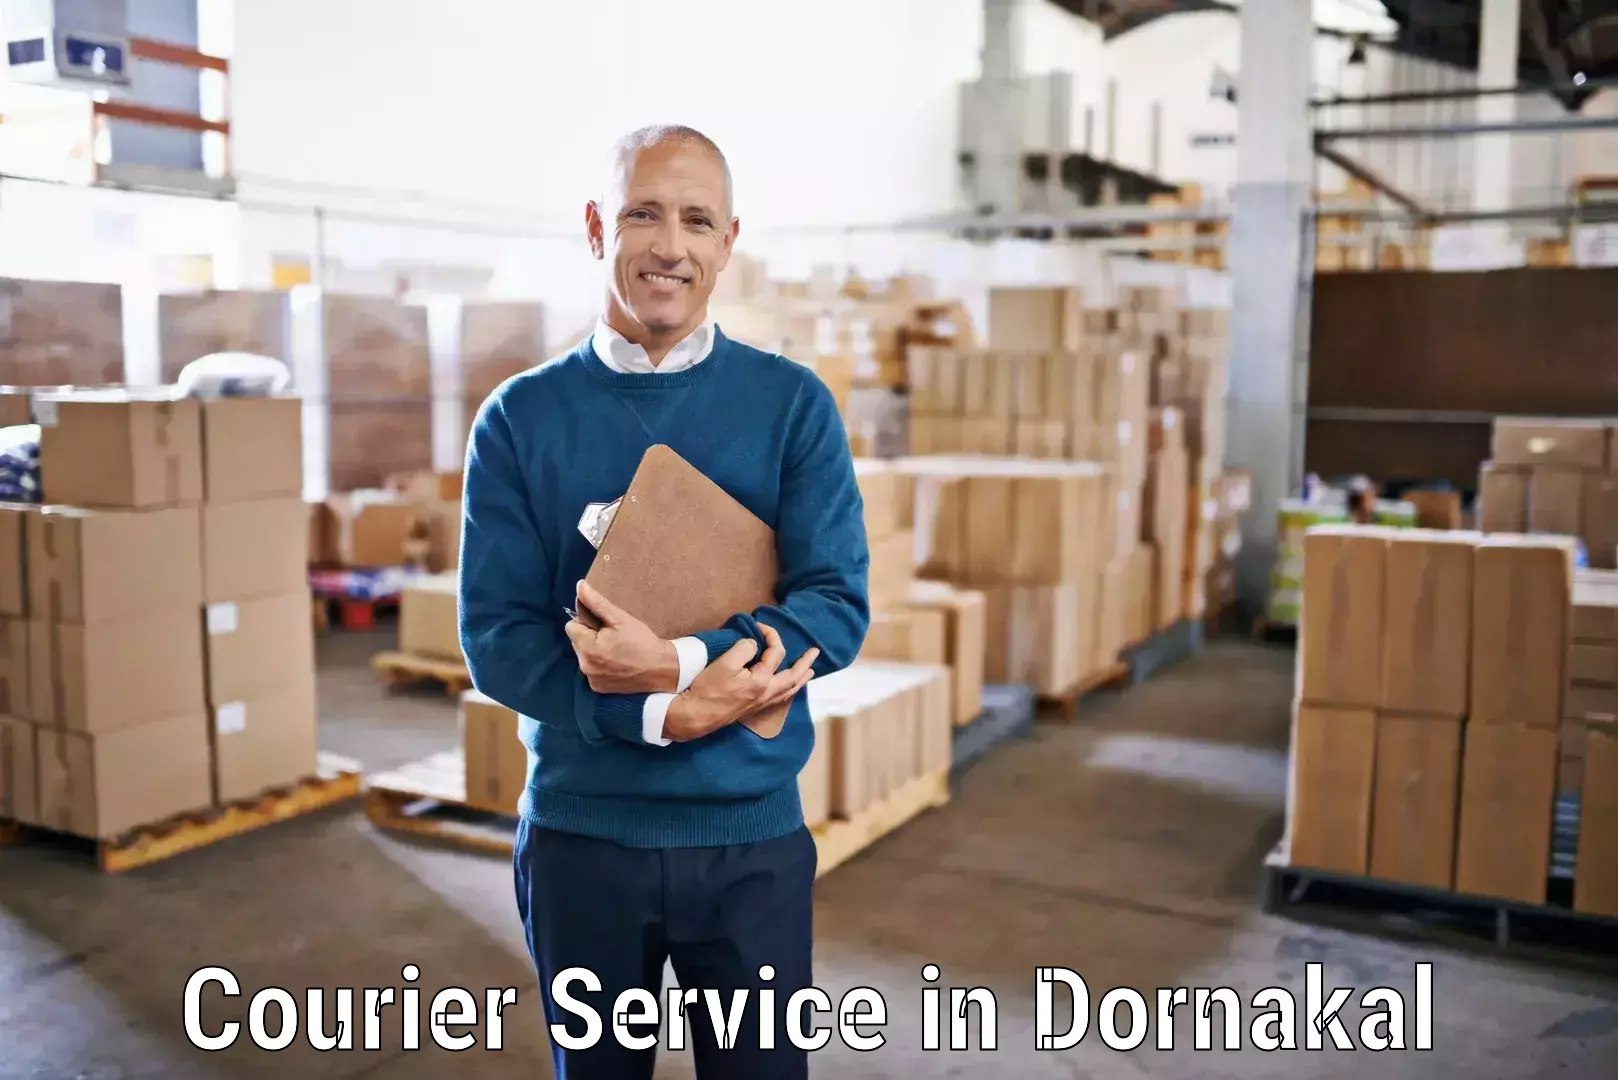 Modern courier technology in Dornakal